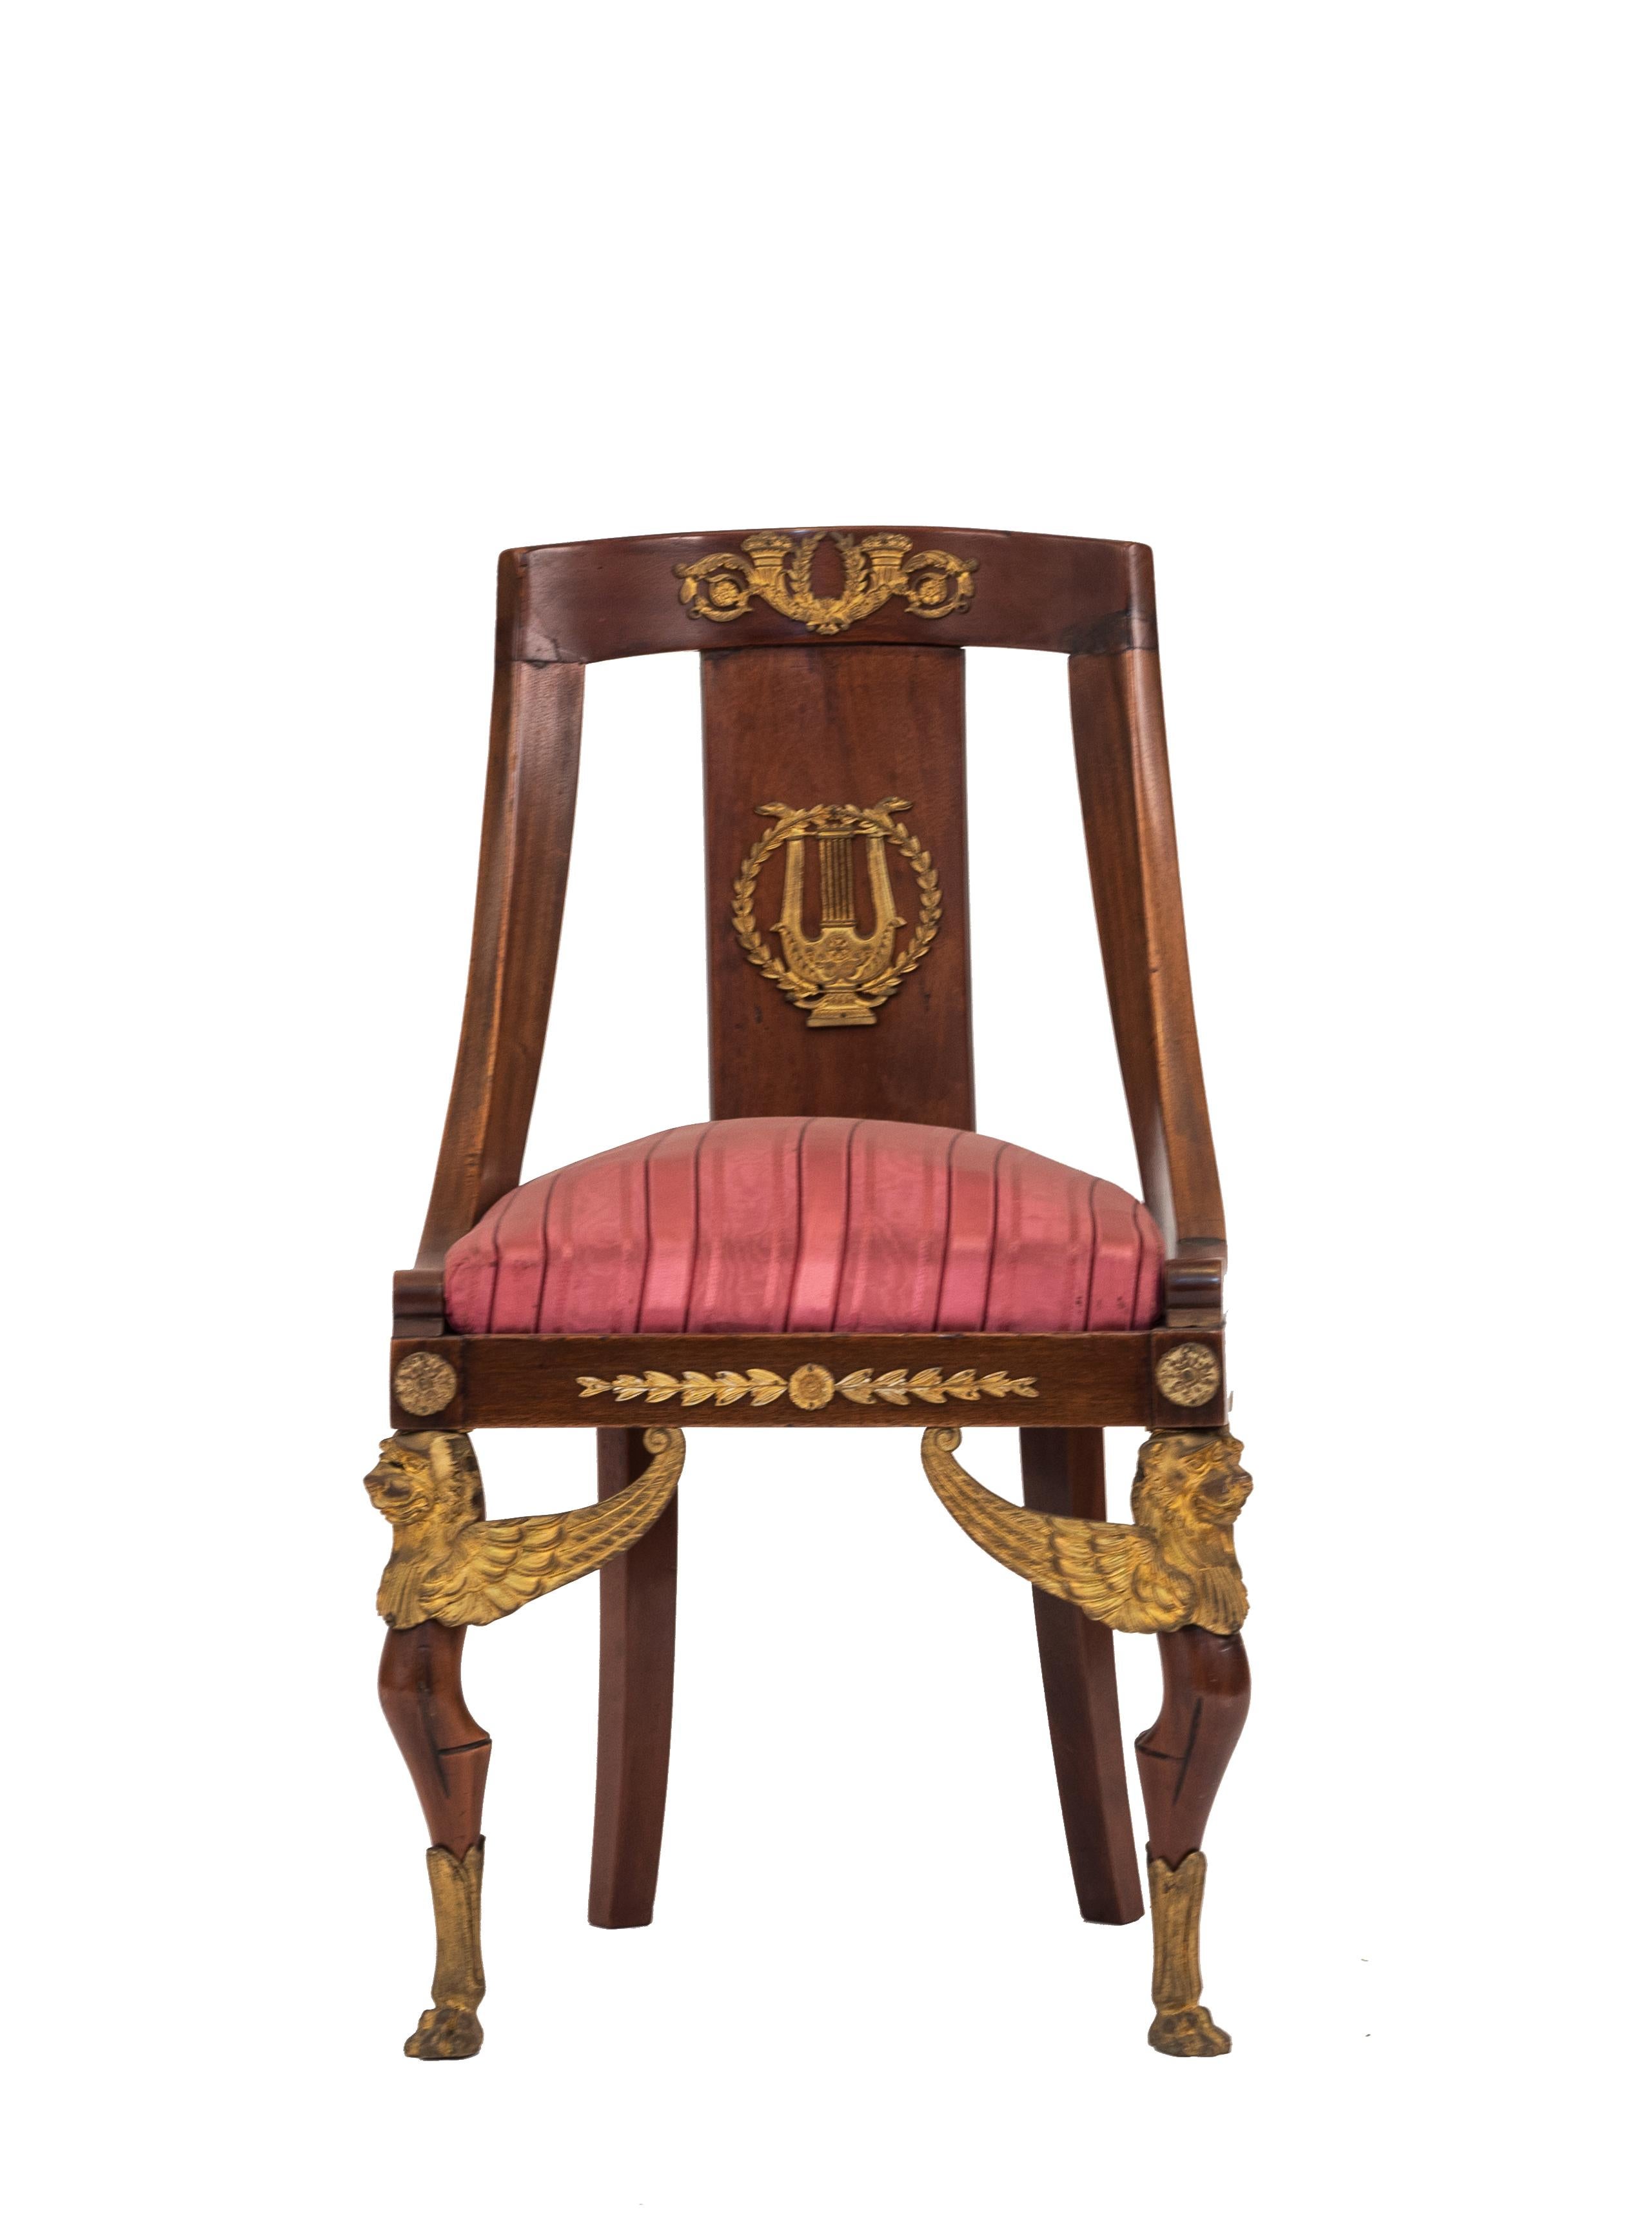 Französischer Empire-Stil (19. Jh.) Mahagoni-Schlittenstuhl mit bronzefarbenen Greifenbeinen und roter Sitzfläche
